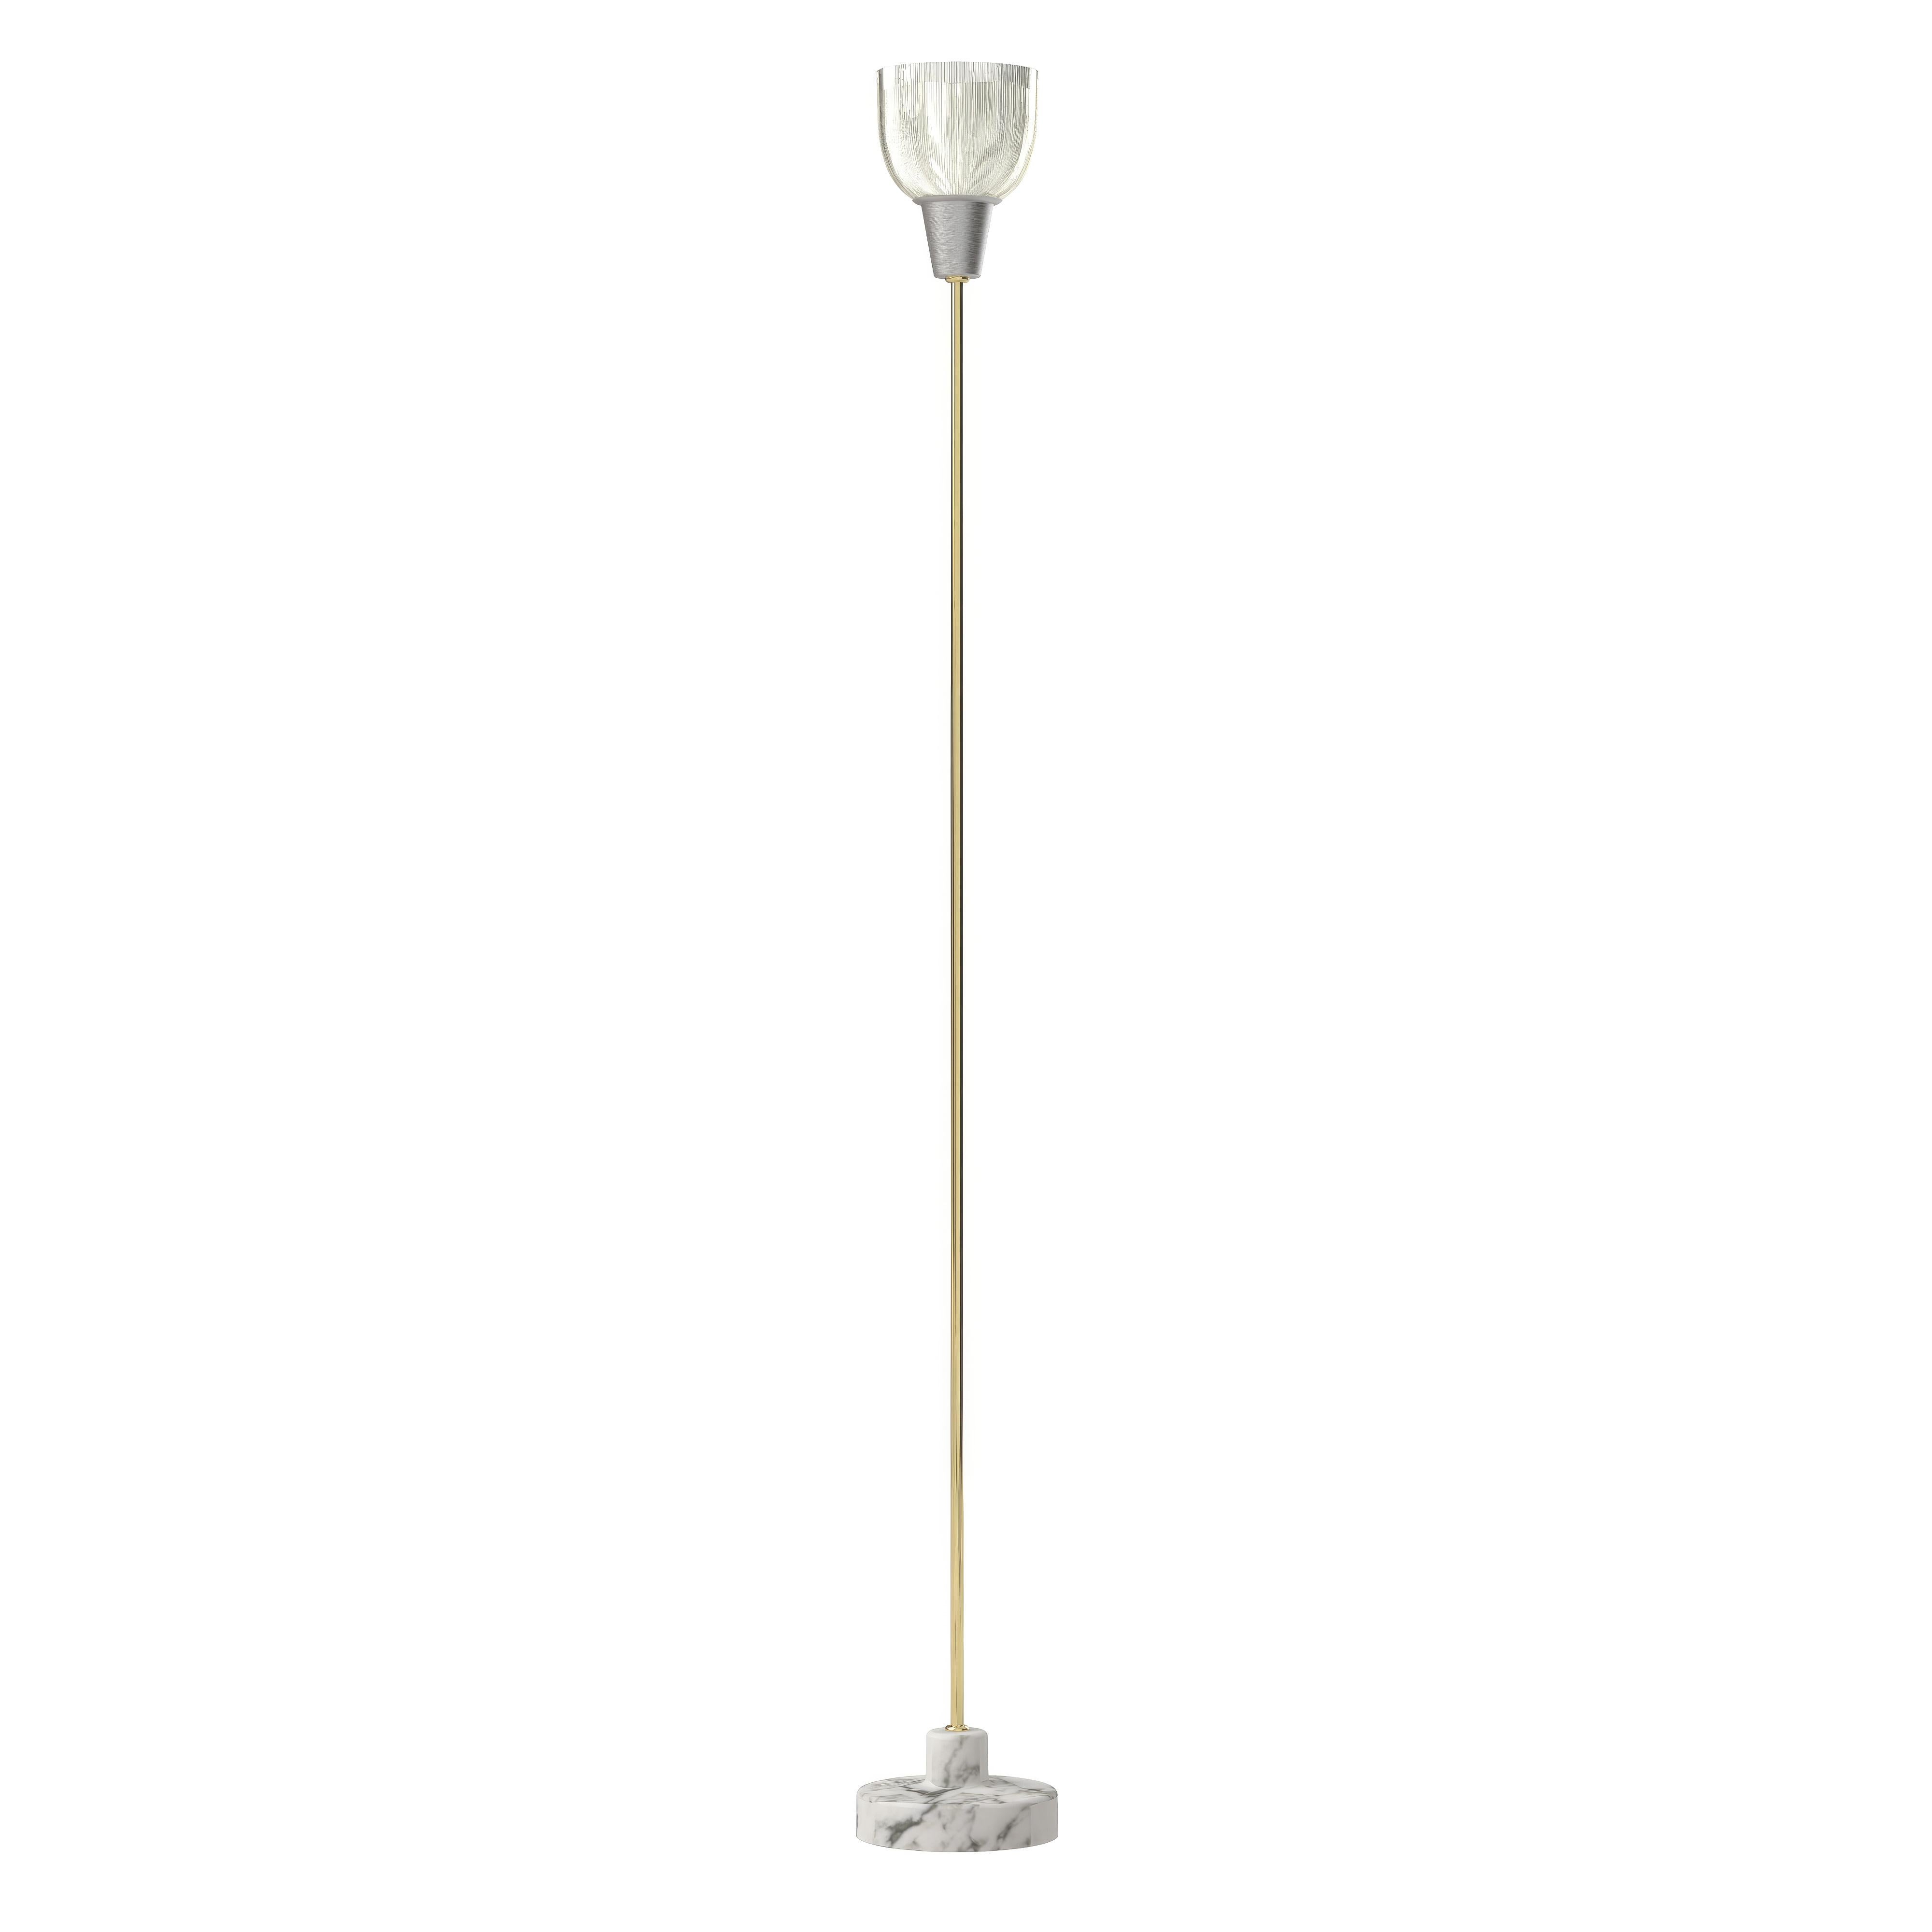 Italian Ignazio Gardella 'Coppa Aperta Piantana' Floor Lamp in White Marble and Brass For Sale